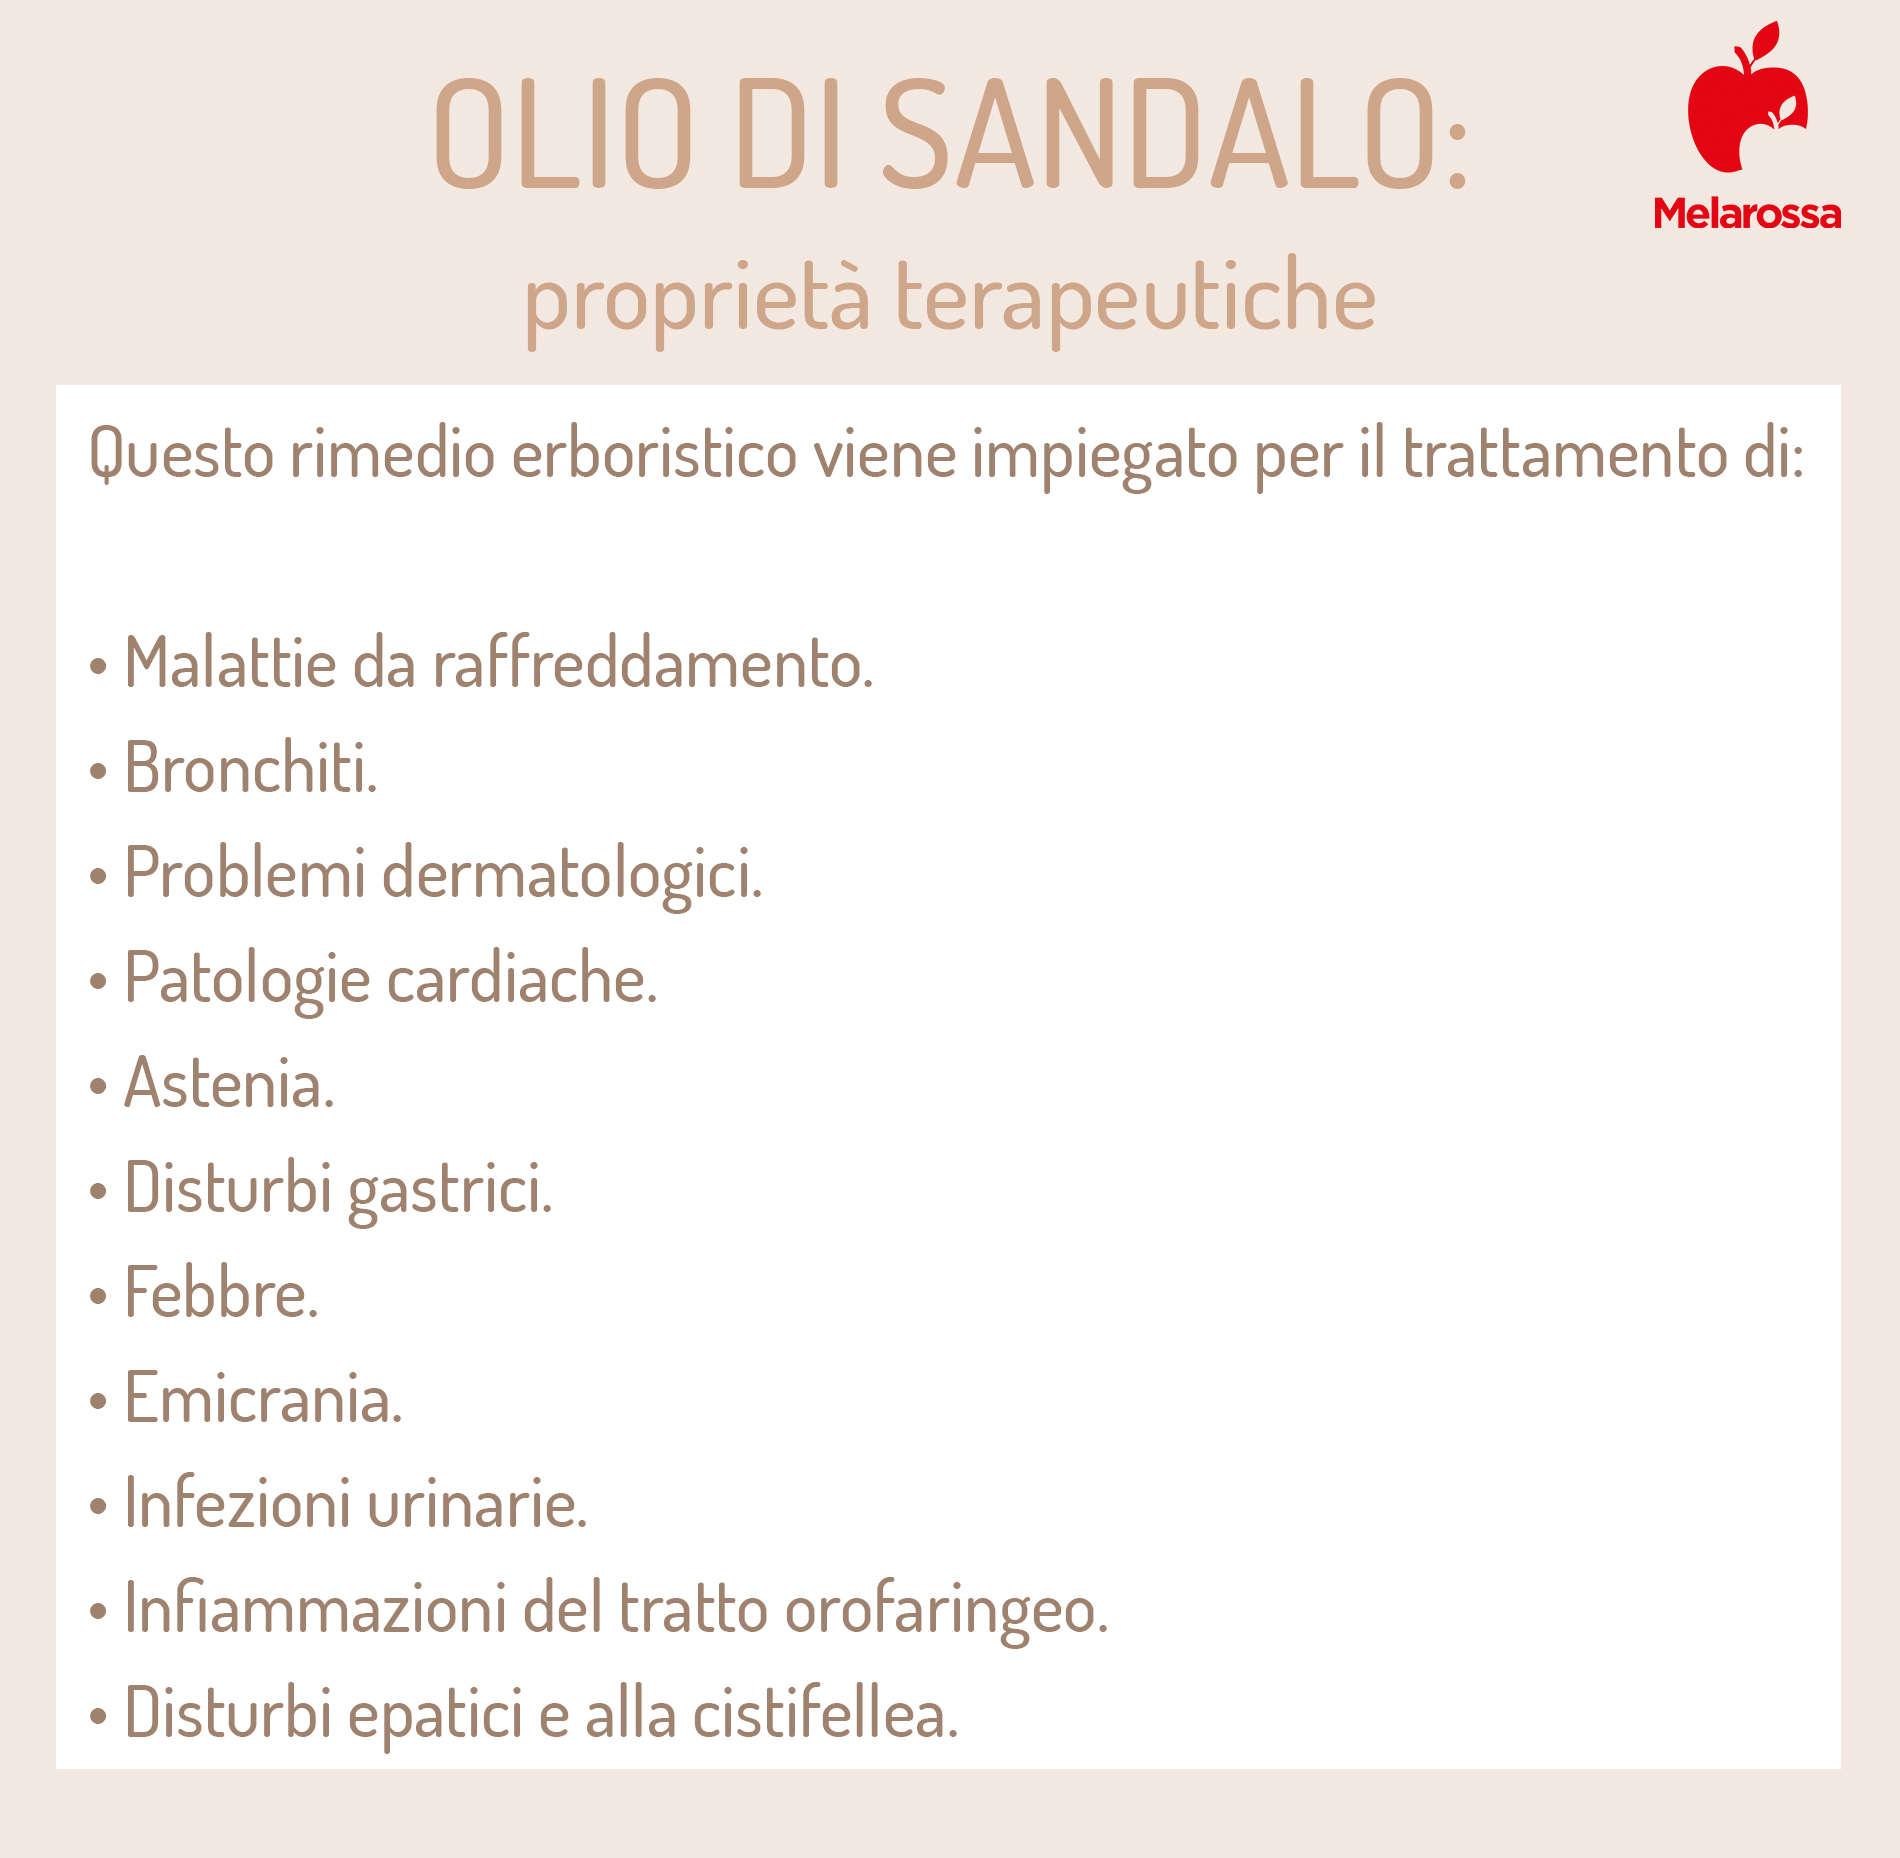 olio di sandalo: proprietà terapeutiche 